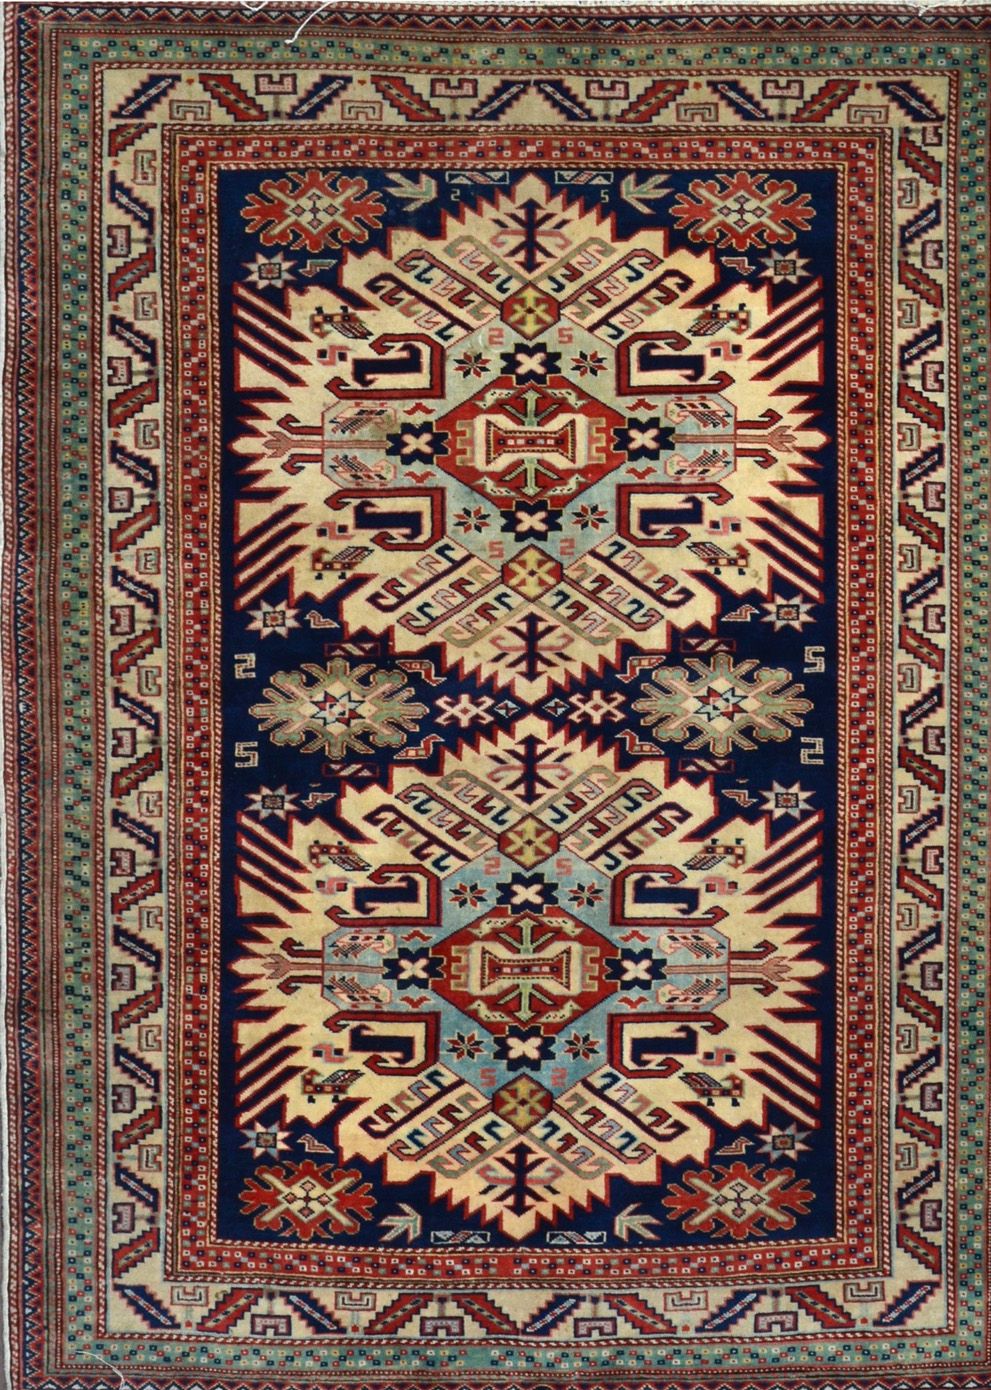 Null Derbend 

Cáucaso Sur 

Sobre 1975/80

Tamaño 170 x 125 cm

Terciopelo de l&hellip;